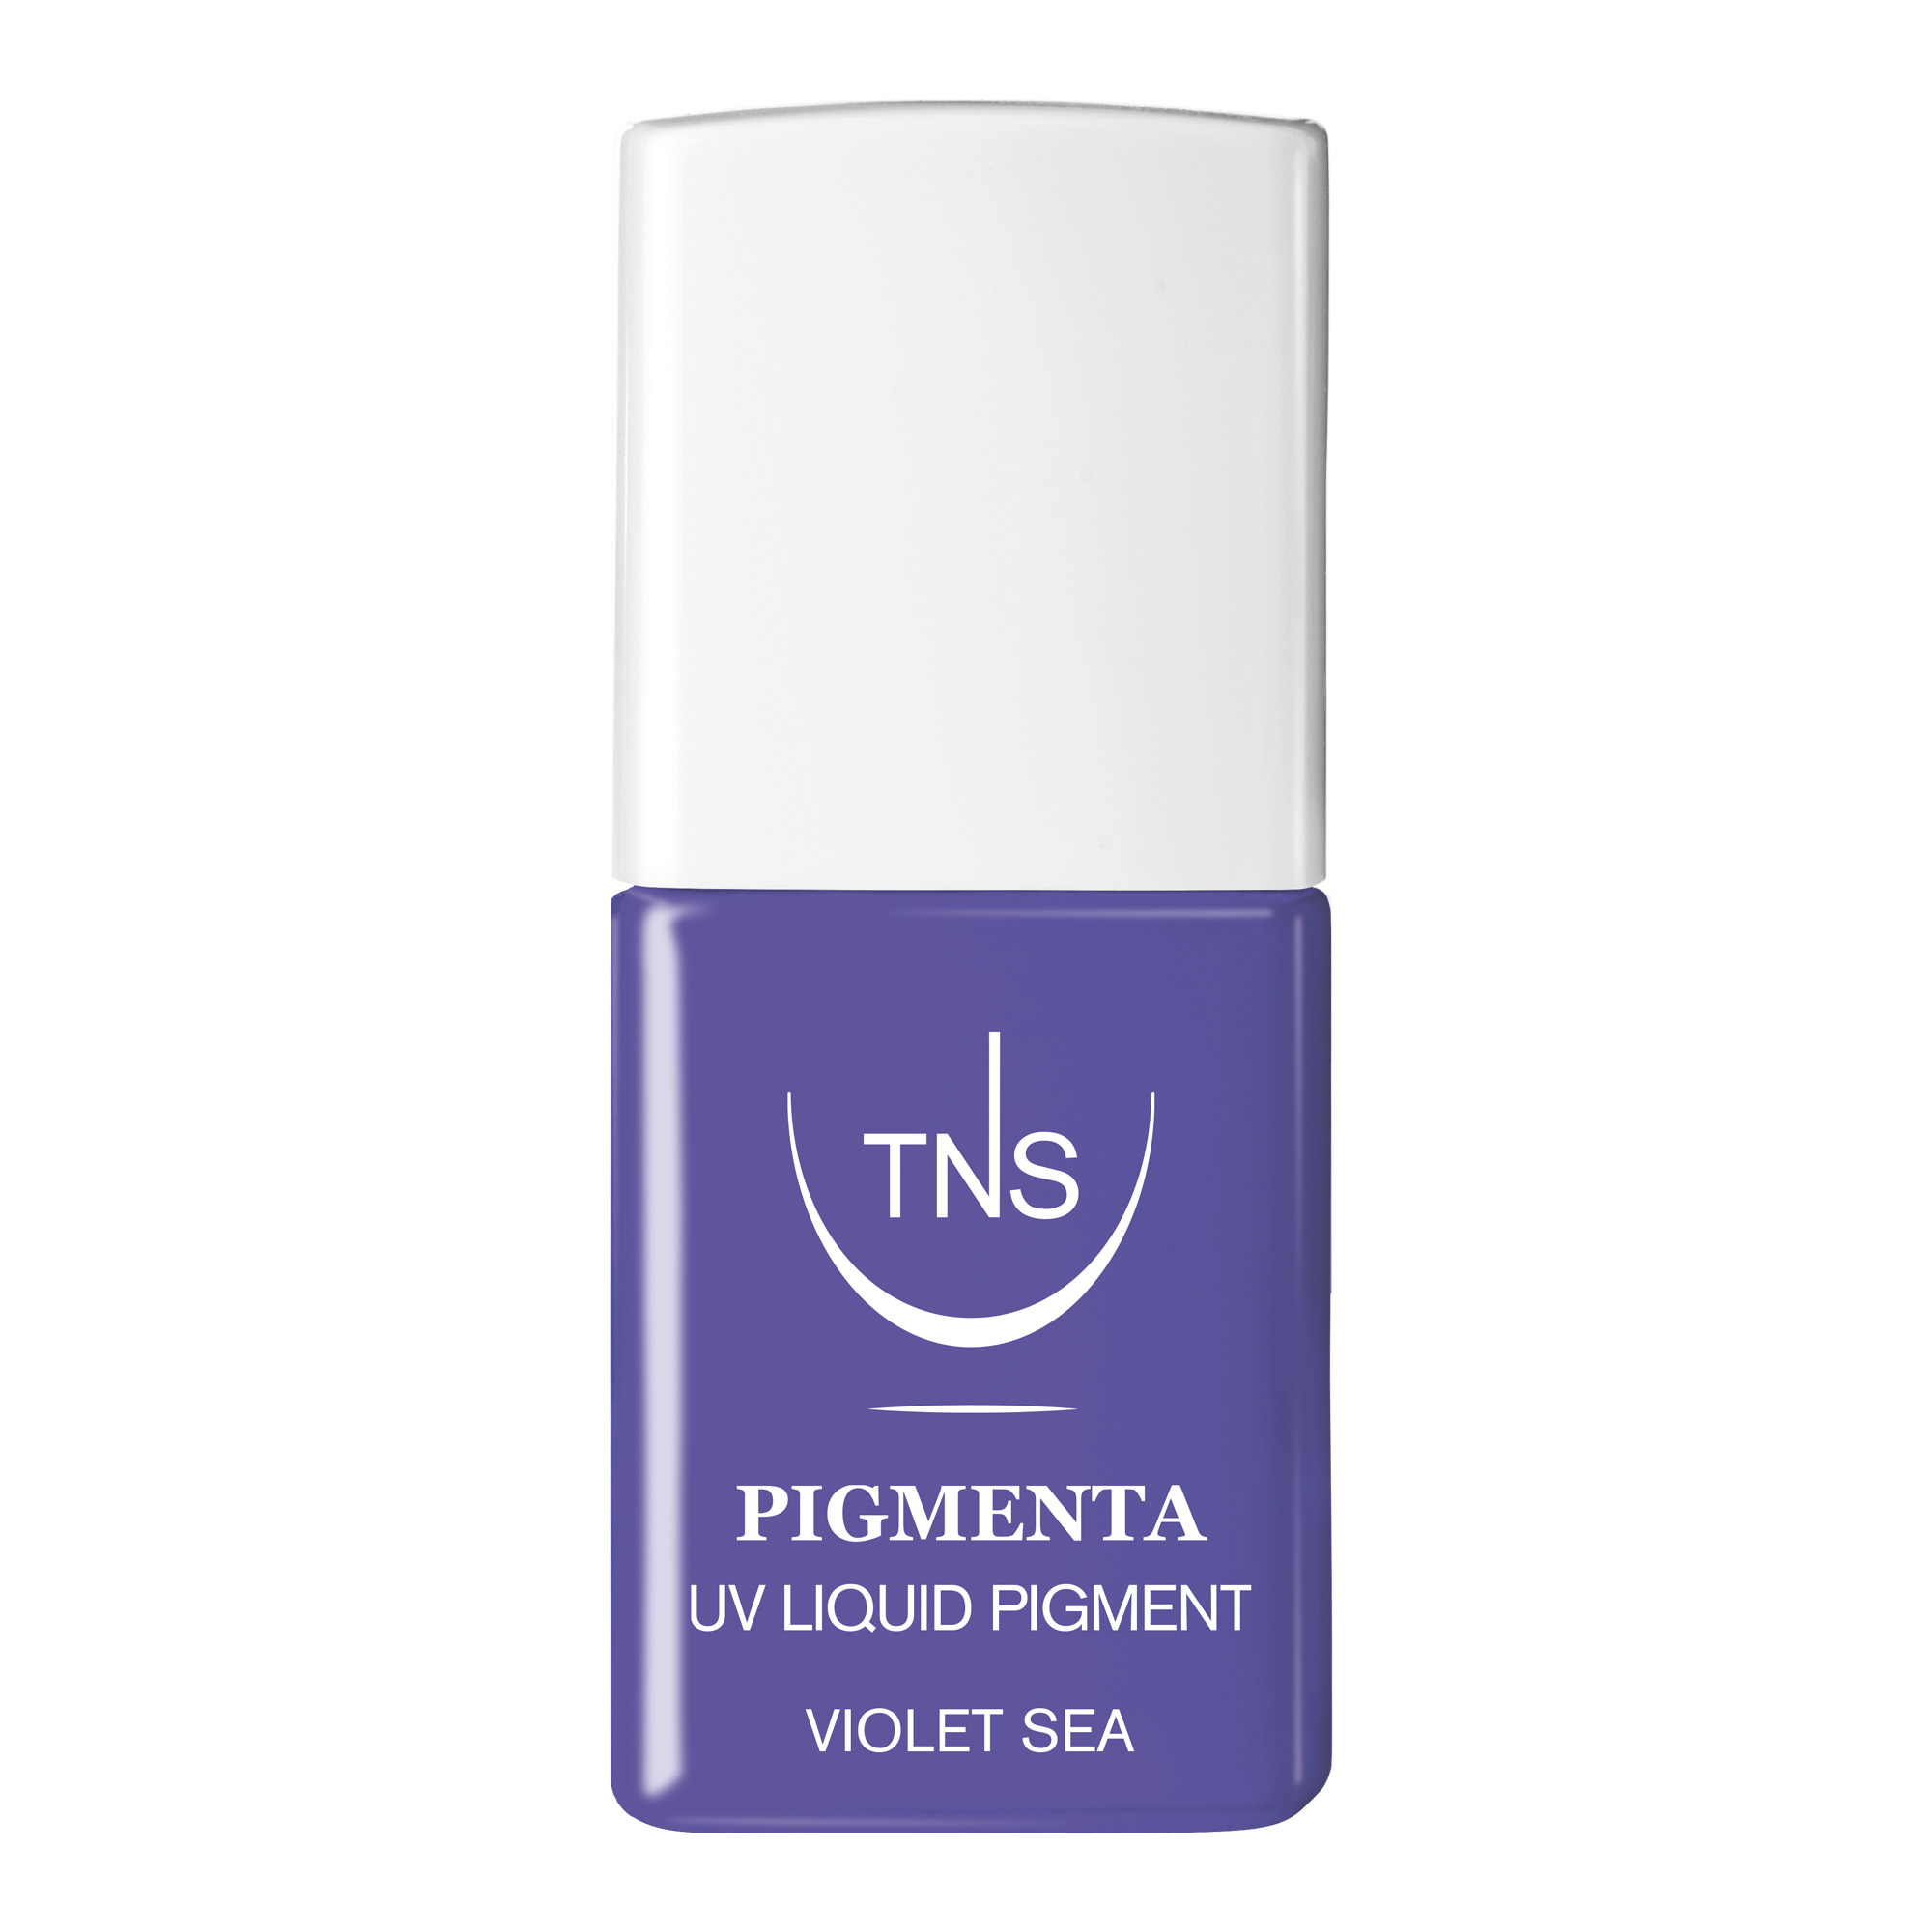 Pigmento Liquido UV Violet Sea viola acceso 10 ml Pigmenta TNS